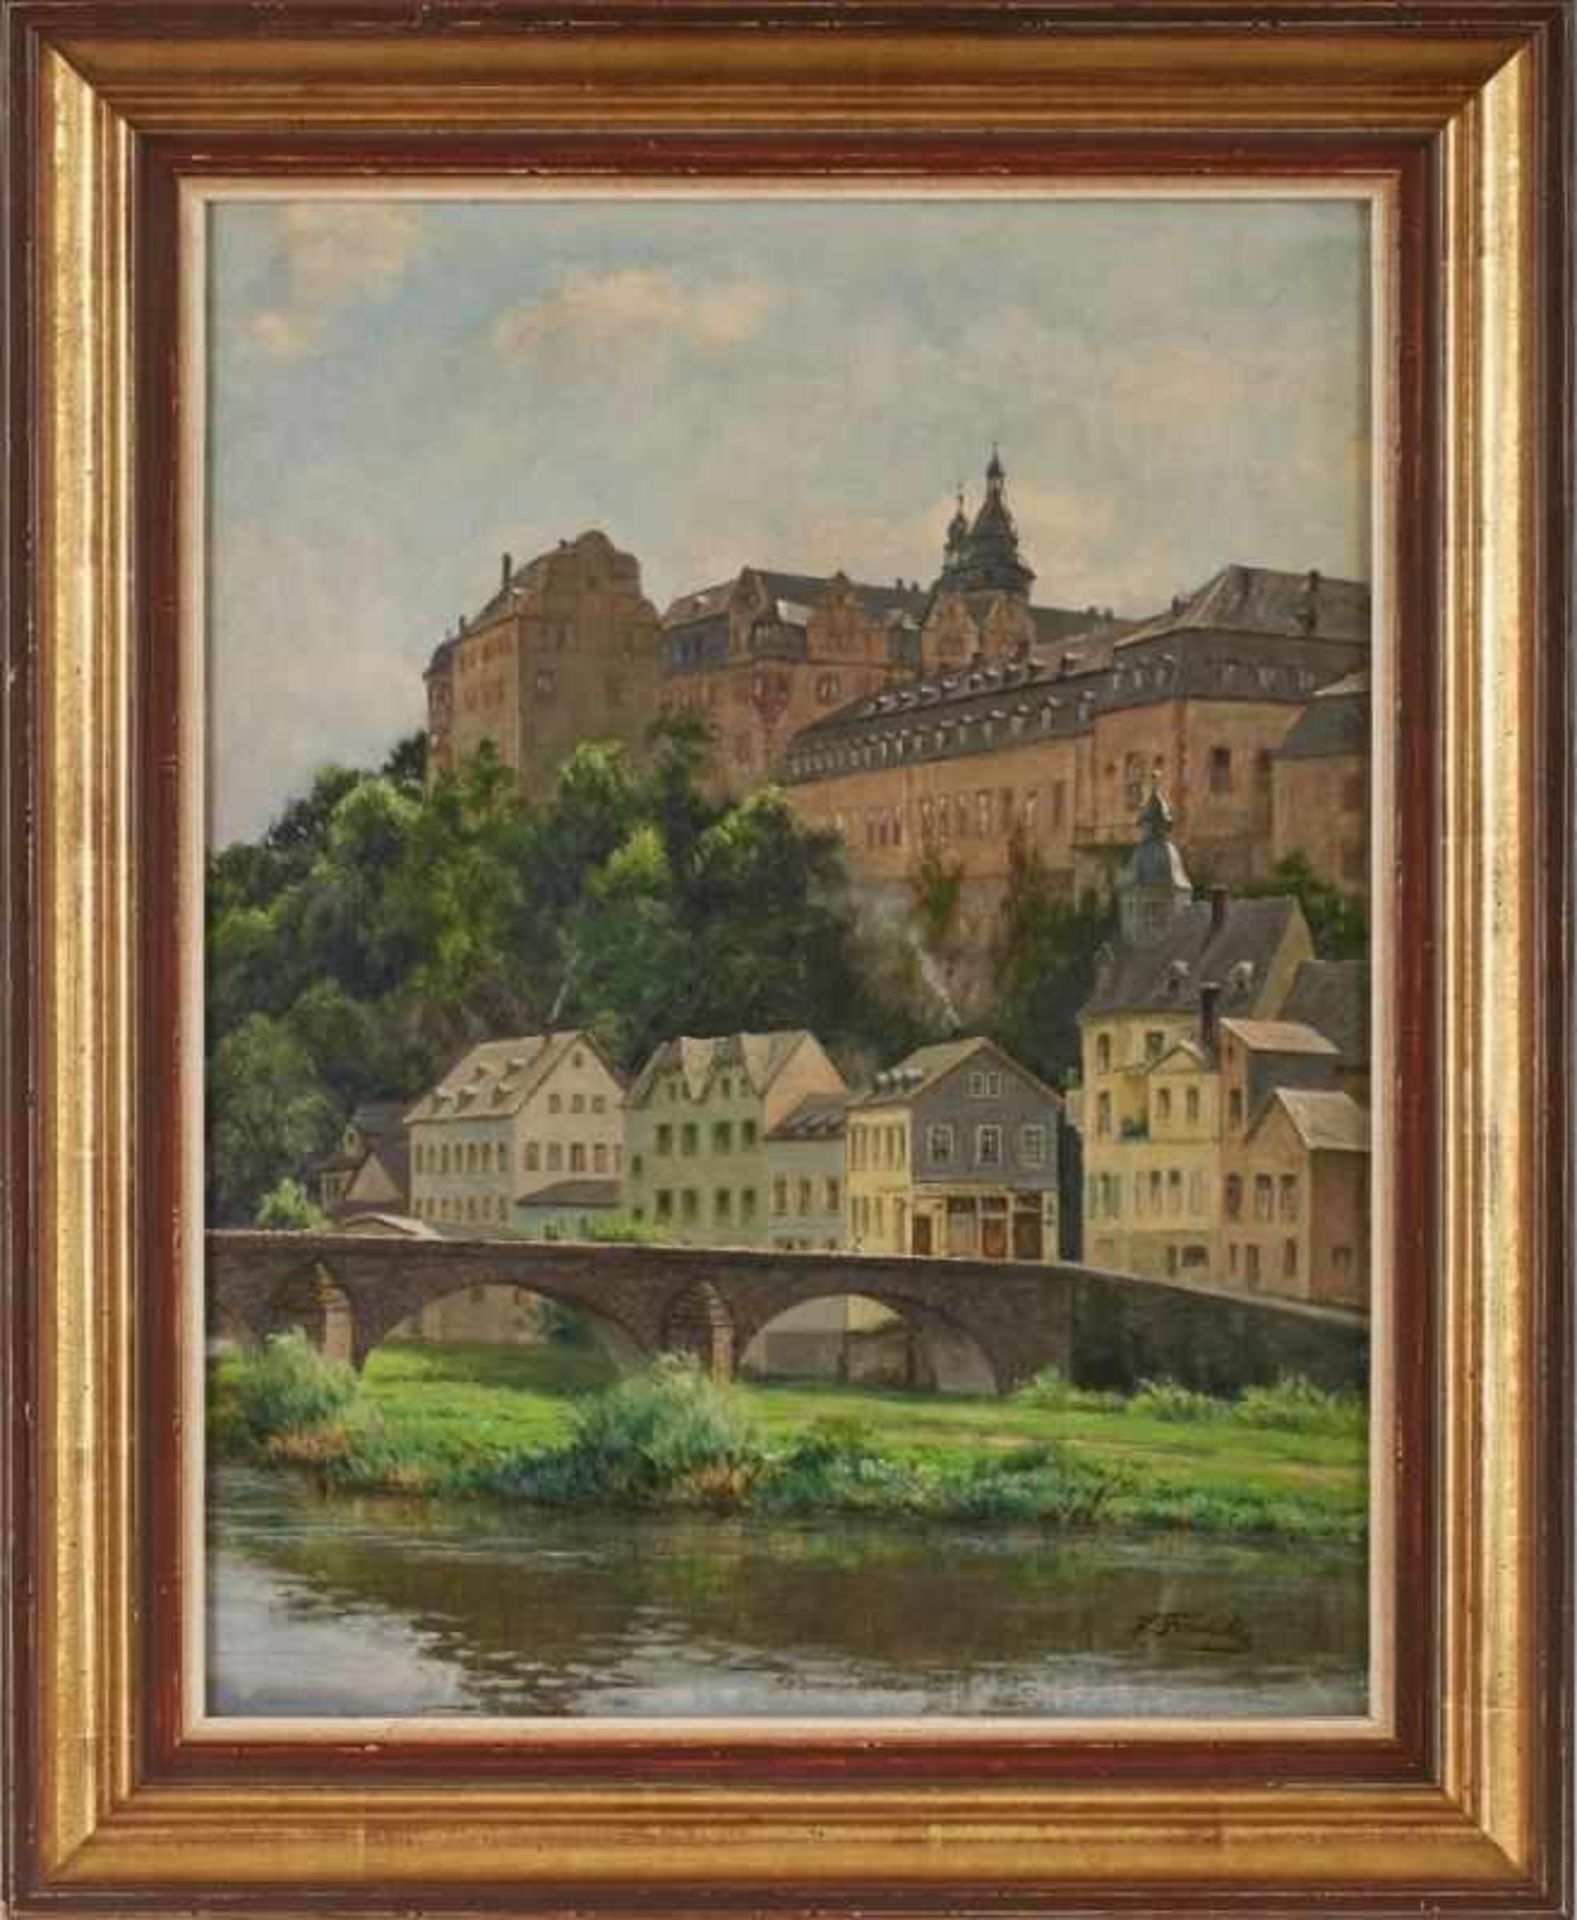 Gemälde Hanny Franke 1890 Koblenz - 1973 Frankfurt "Schloss Weilburg" u. re. sign. H. Franke Öl/ - Bild 3 aus 3